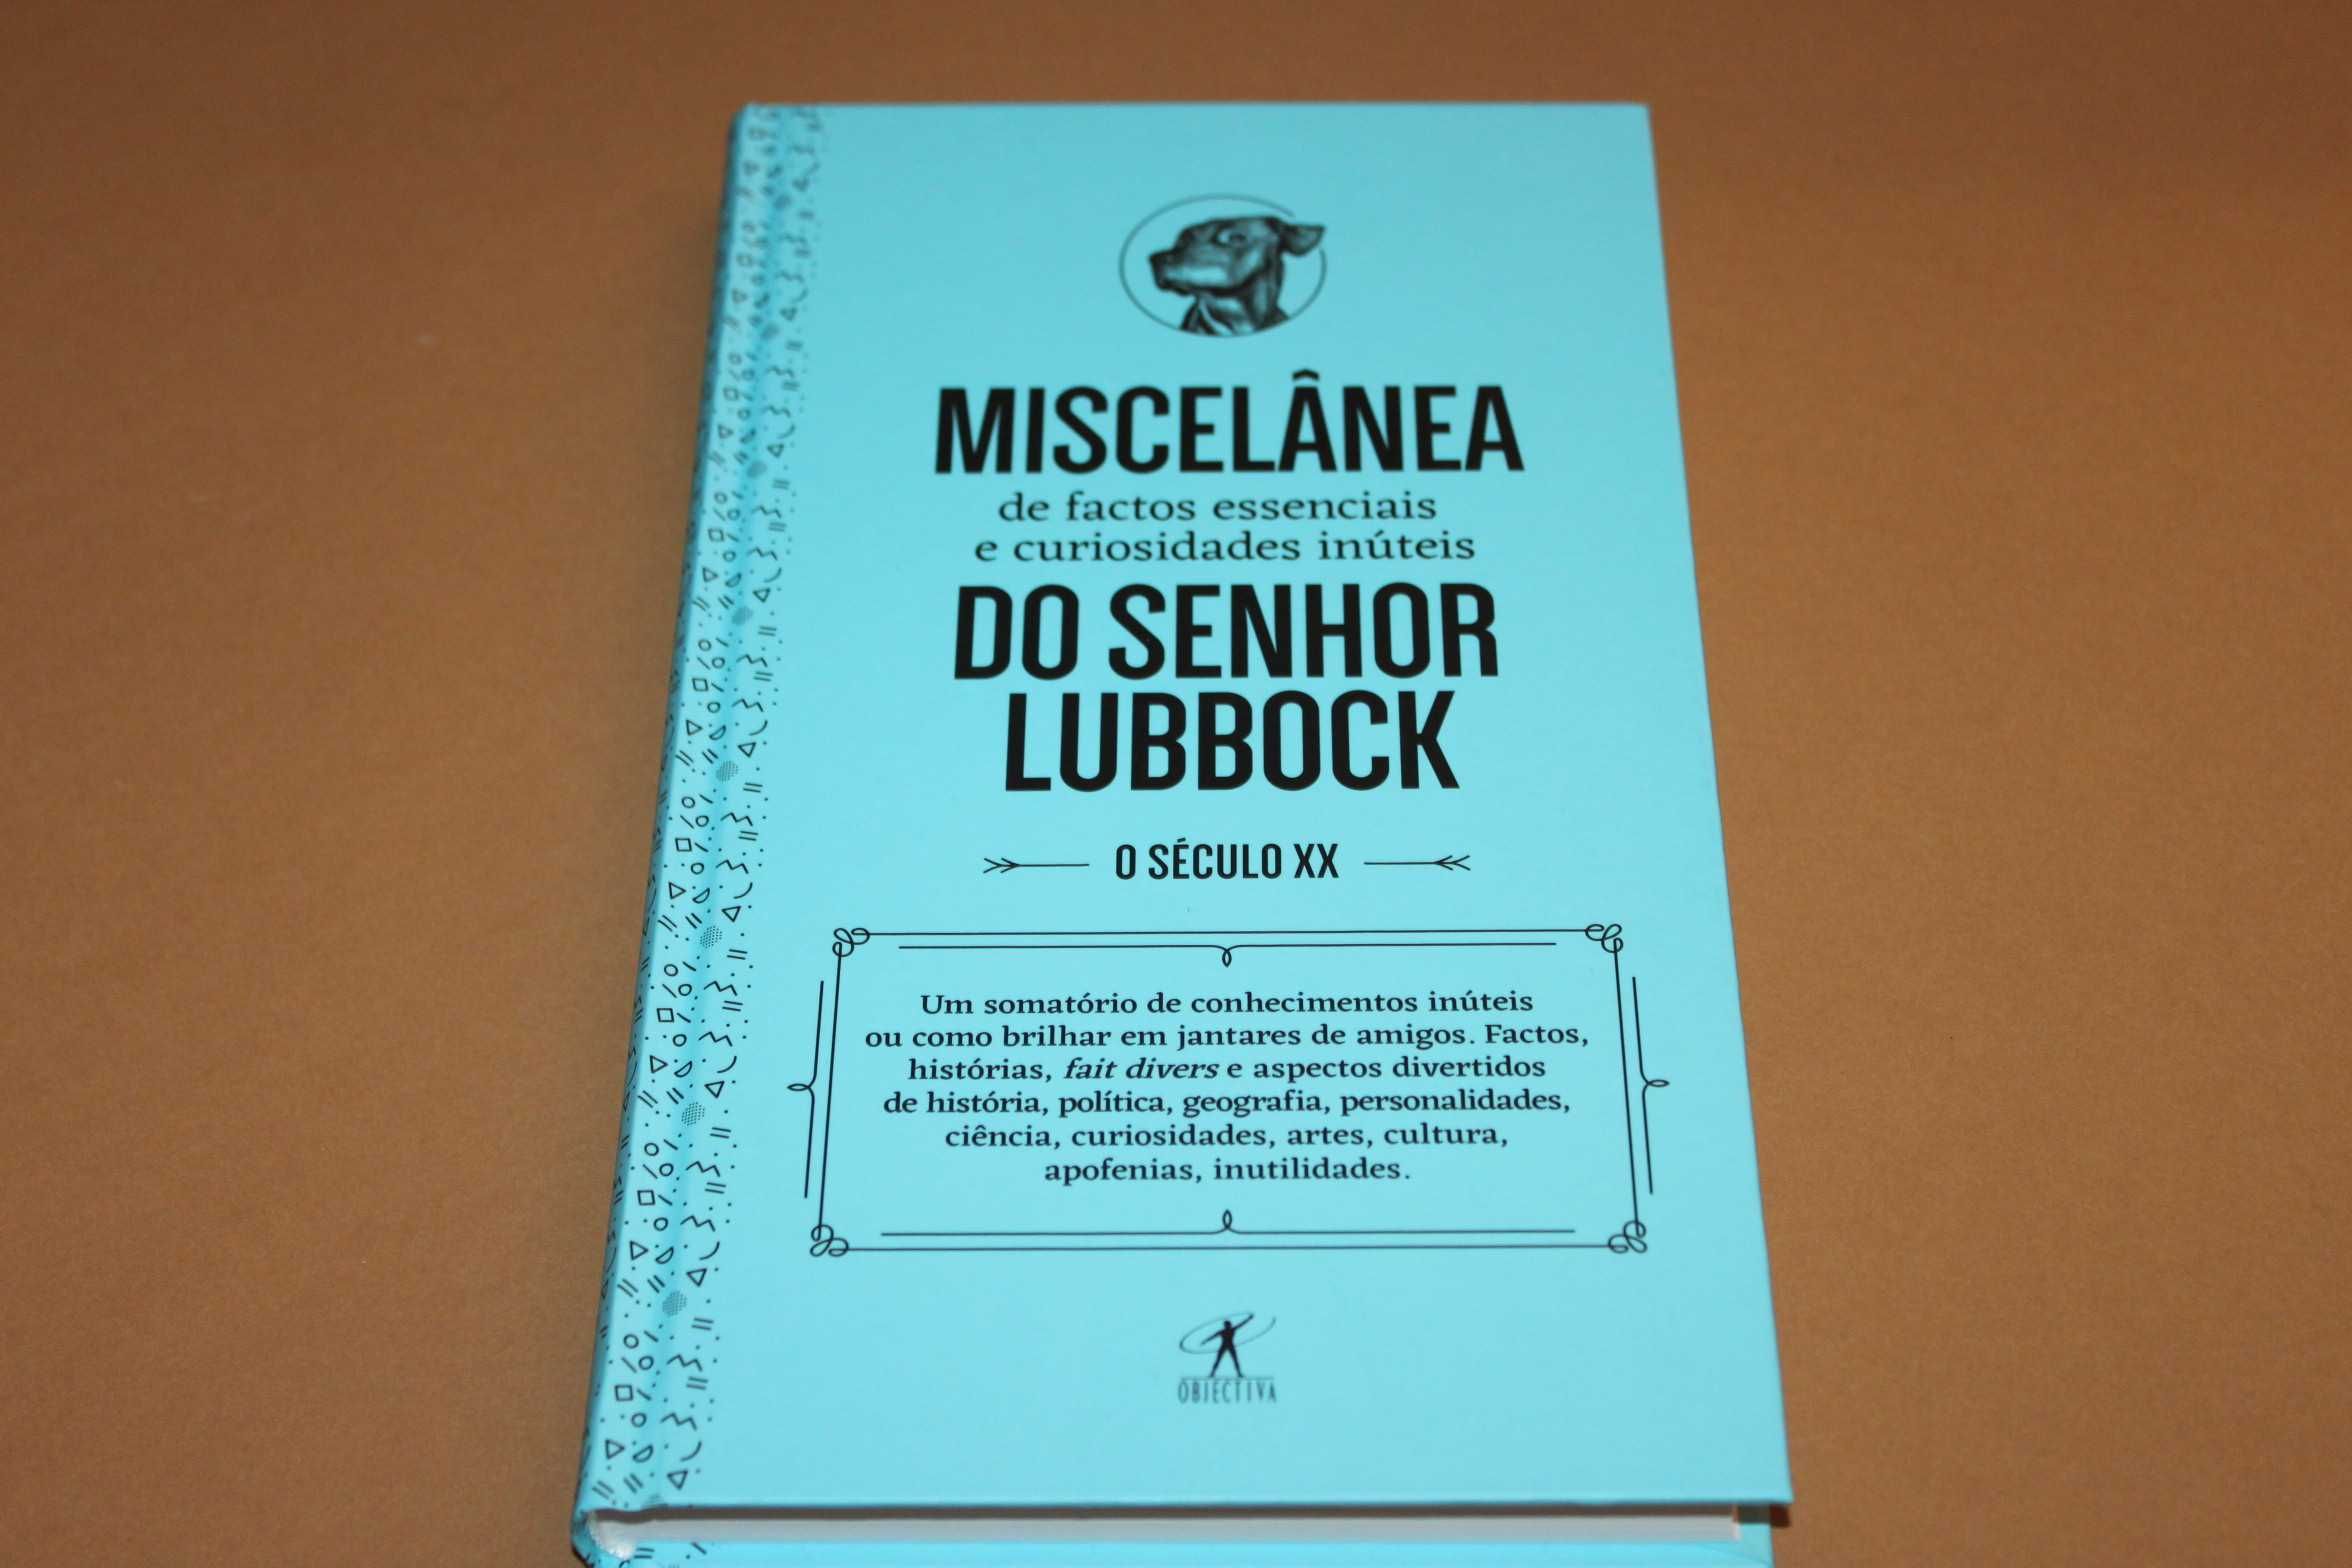 [] Miscelânea de Factos Essenciais  do Sr. Lubbock de Paulo Ferreira